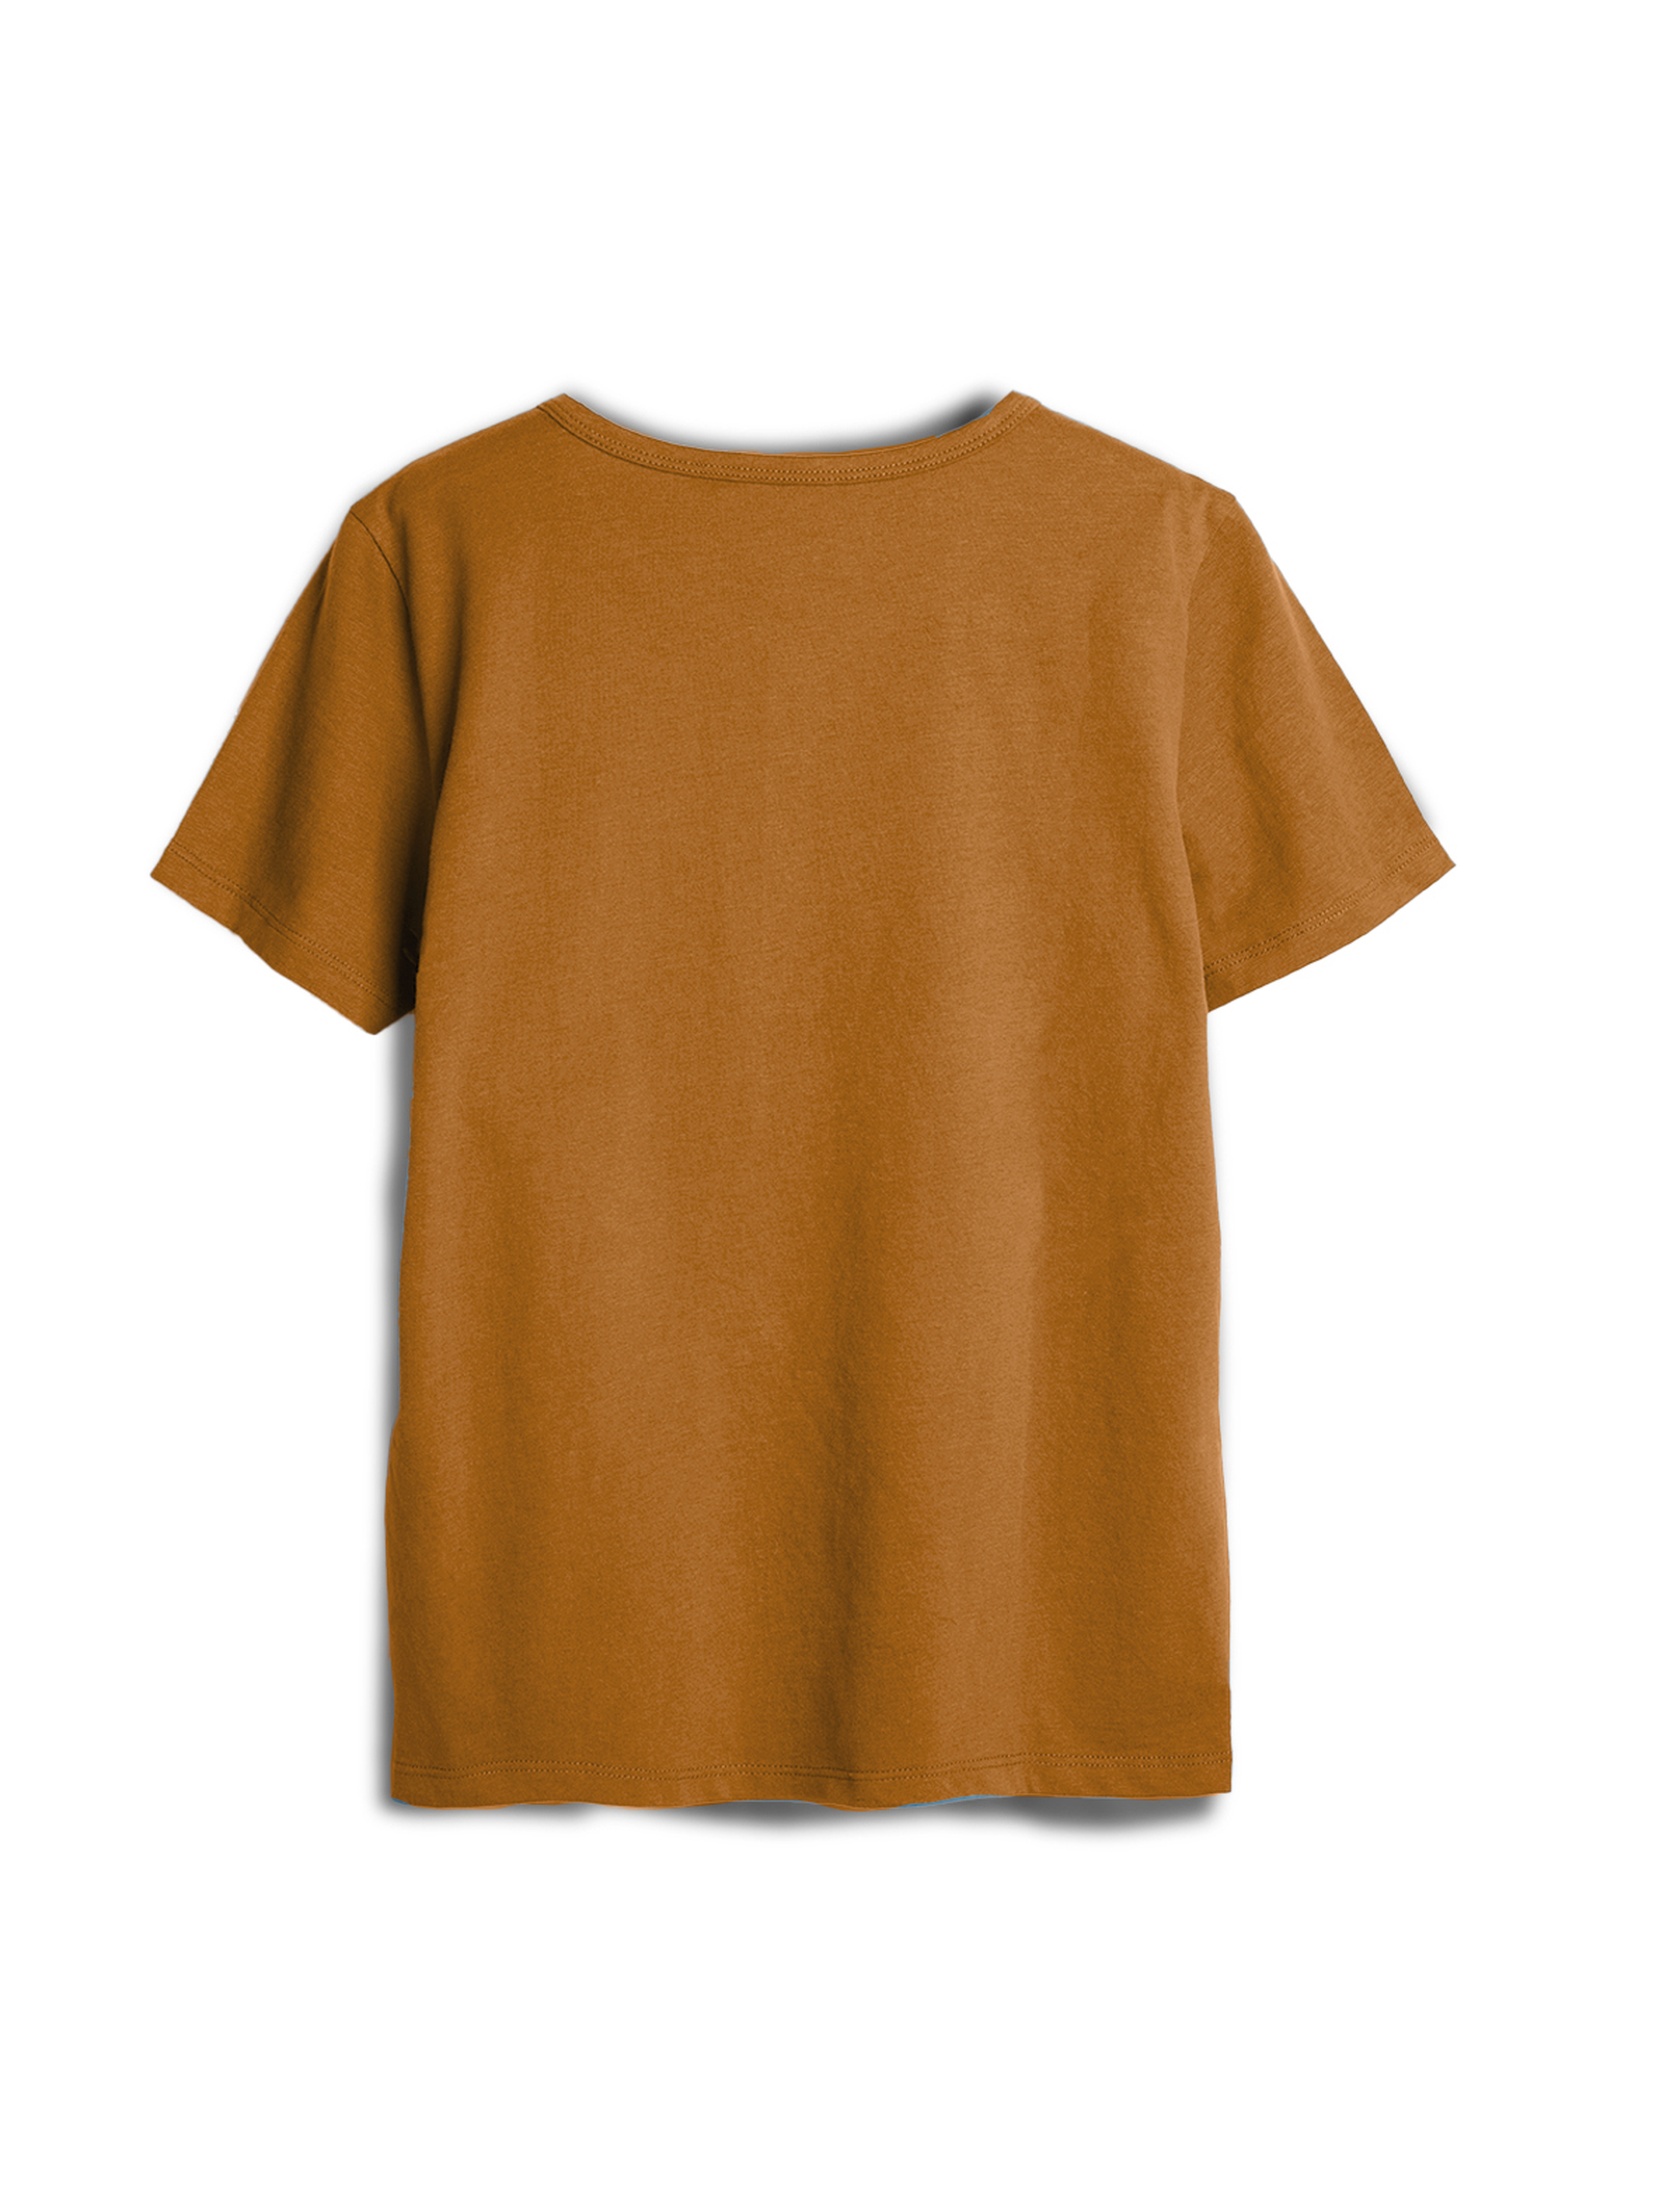 Brązowy dzianinowy t-shirt z guziczkami - unisex - Limited Edition